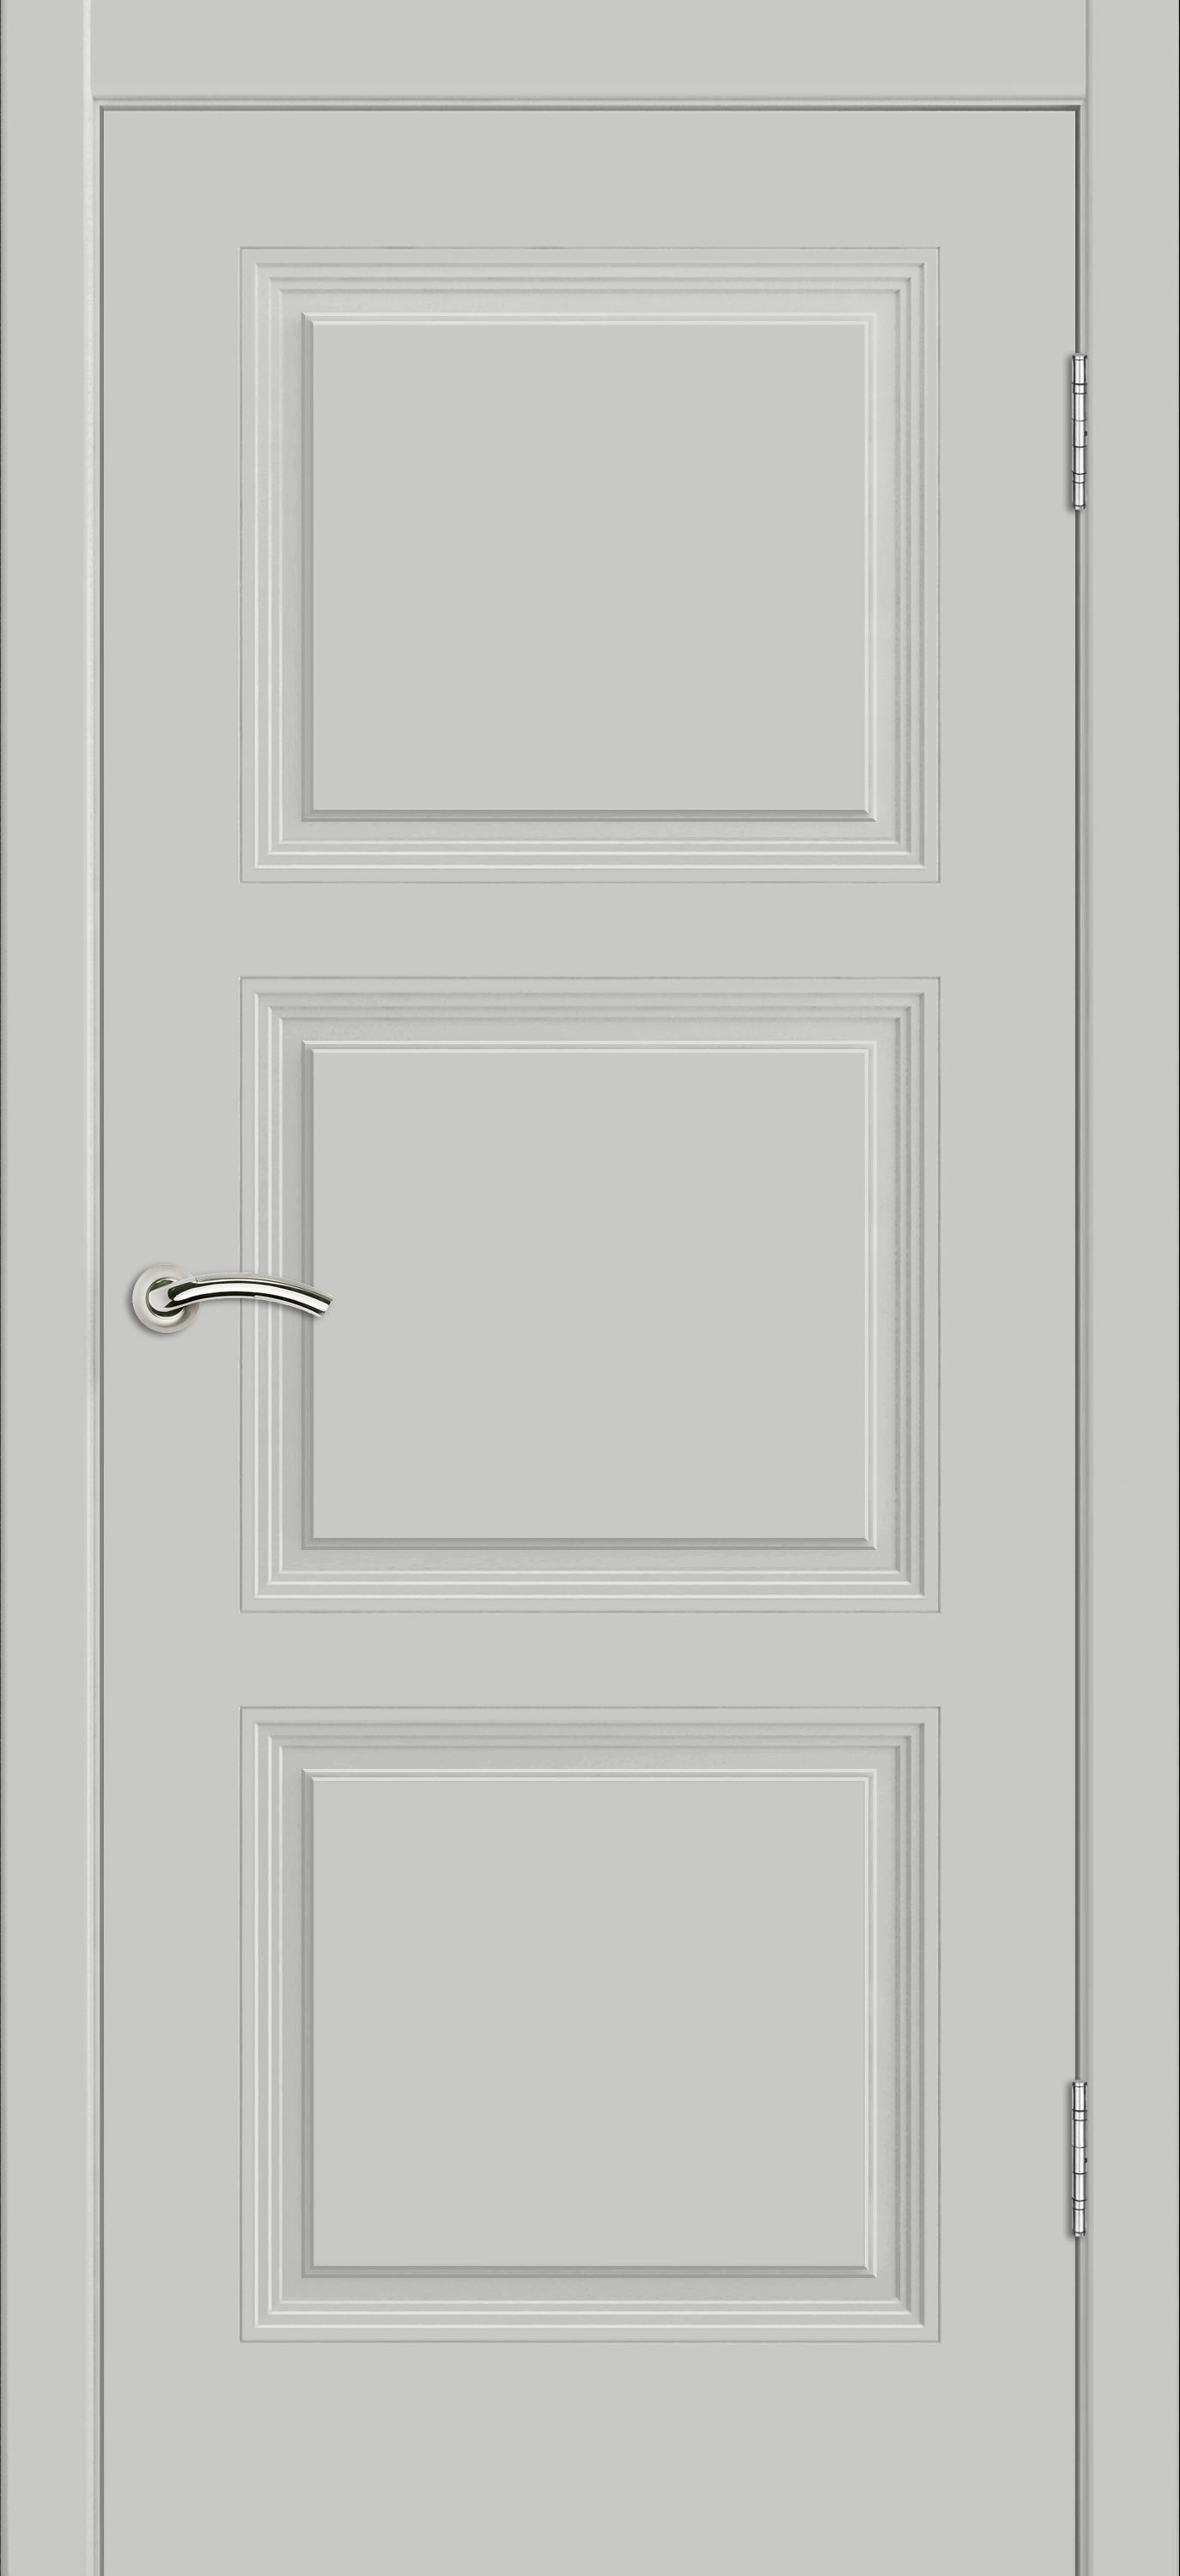 Межкомнатная дверь «Vision 3». Вид отделки Белая эмаль Cтандартный наличник